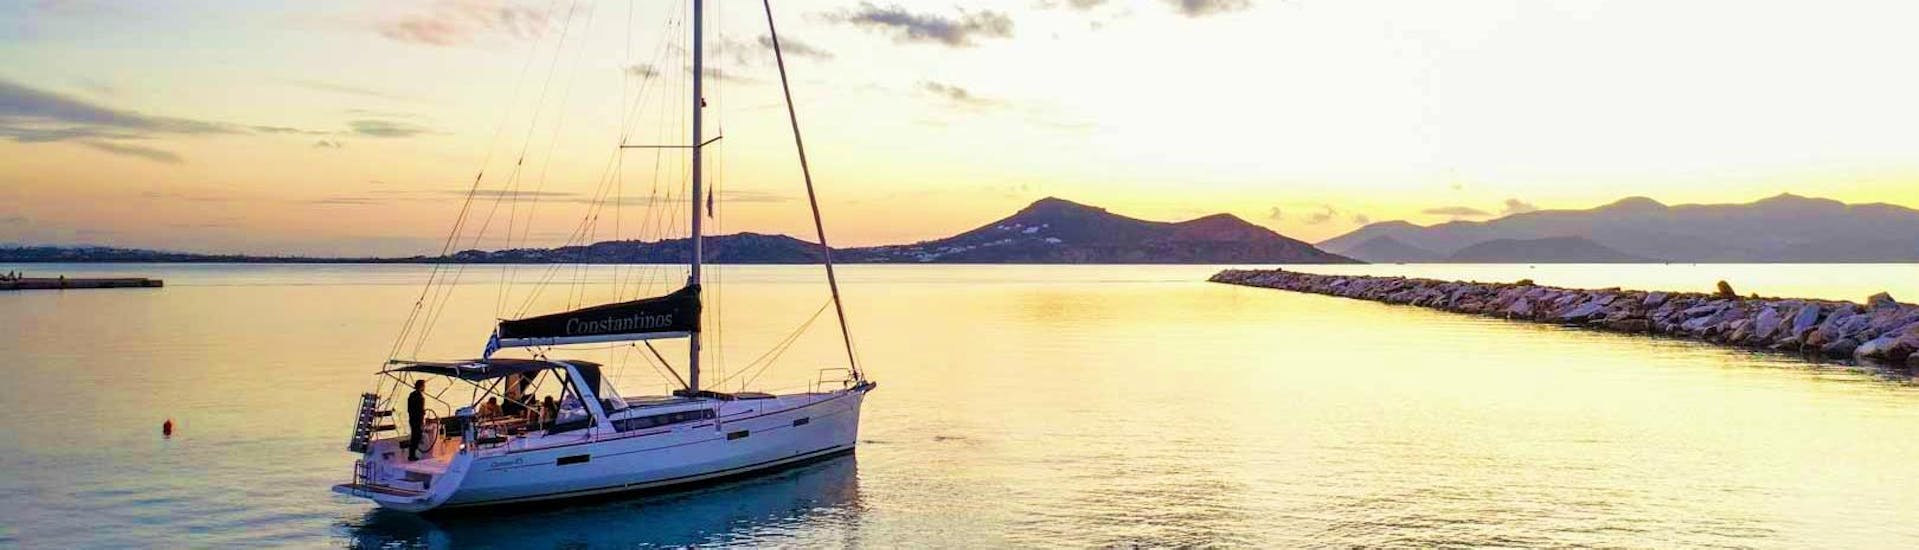 Le catamaran de Naxos, proposant différentes croisières au départ du port de Naxos, est l'endroit idéal pour observer le coucher de soleil sur la mer Égée.